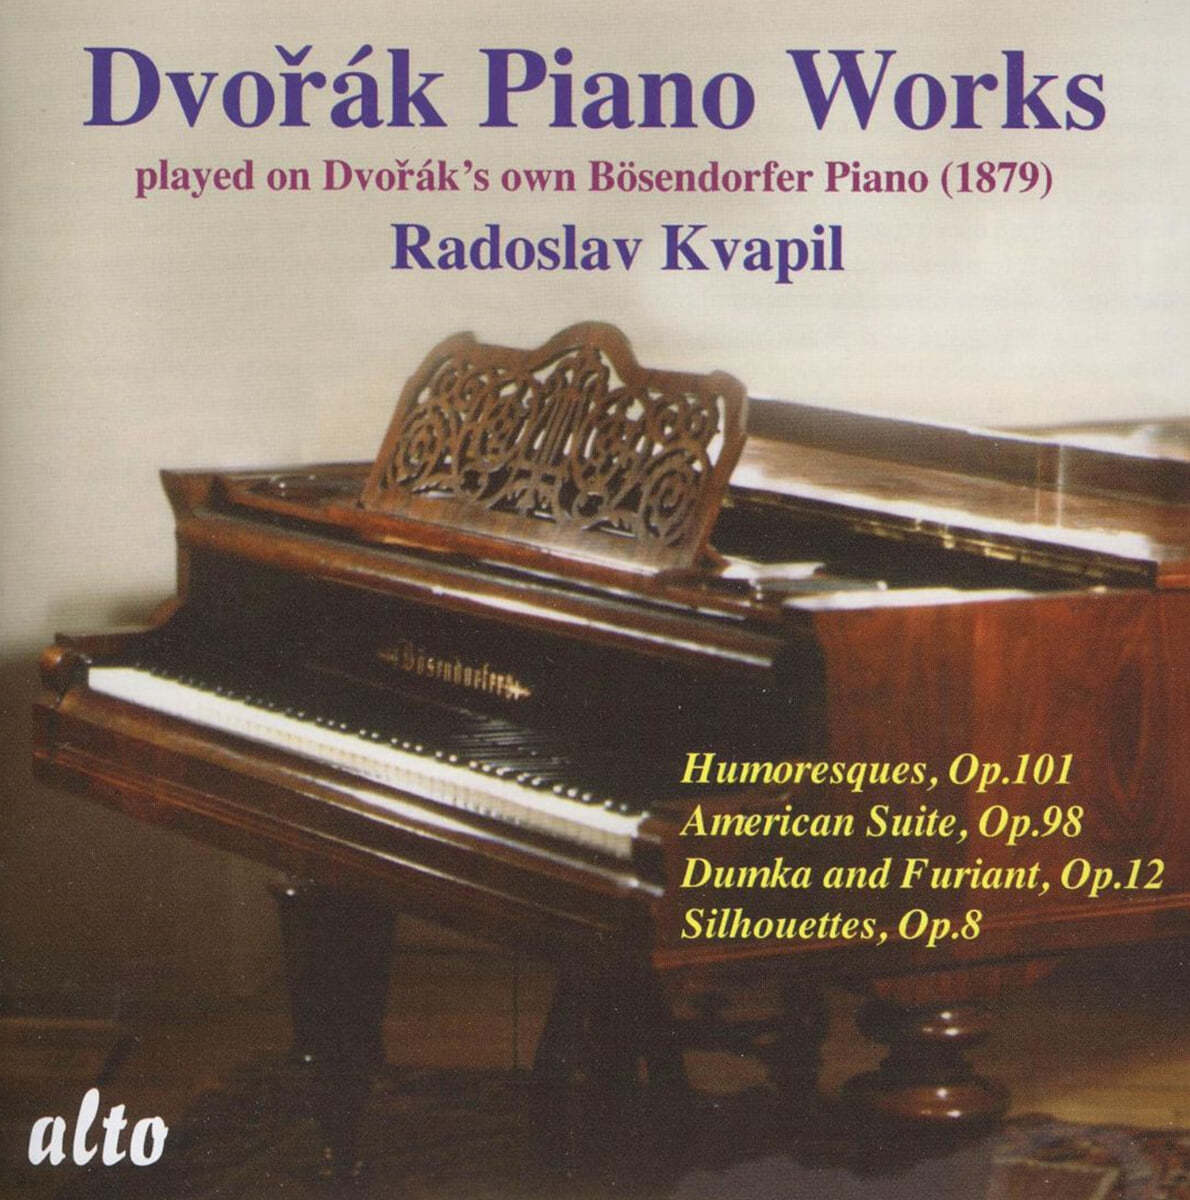 드보르작의 피아노로 연주한 드보르작 작품집 (Dvorak: Piano Works played on Dvorak's own Piano Bosendorfer 1879)